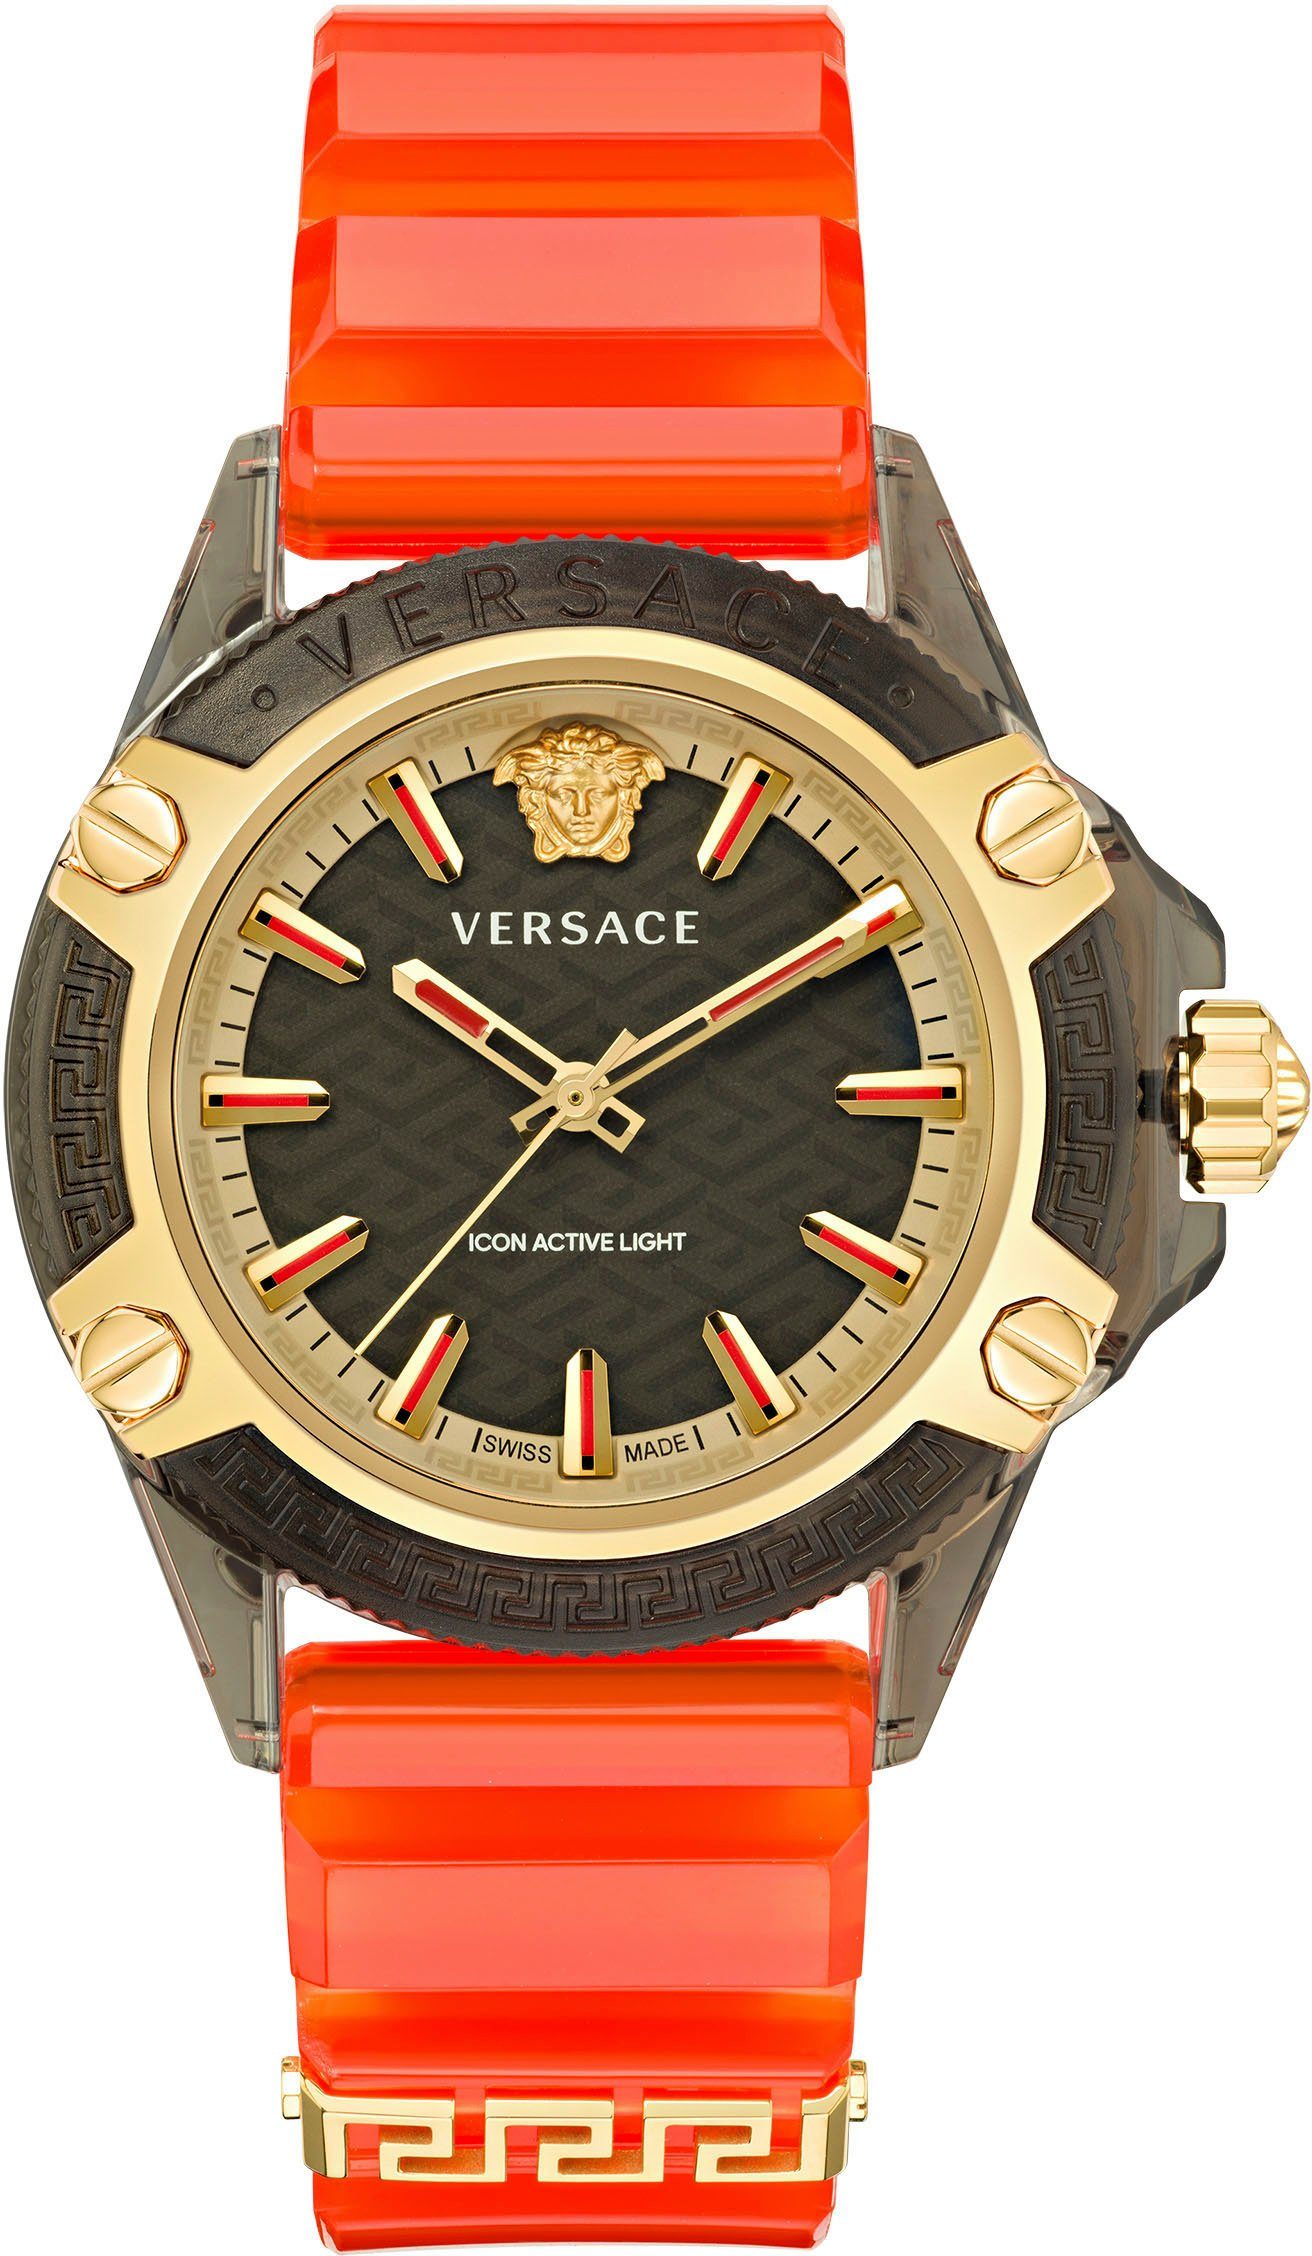 Aktionspreis Versace Quarzuhr ICON ACTIVE, VE6E00223 orange